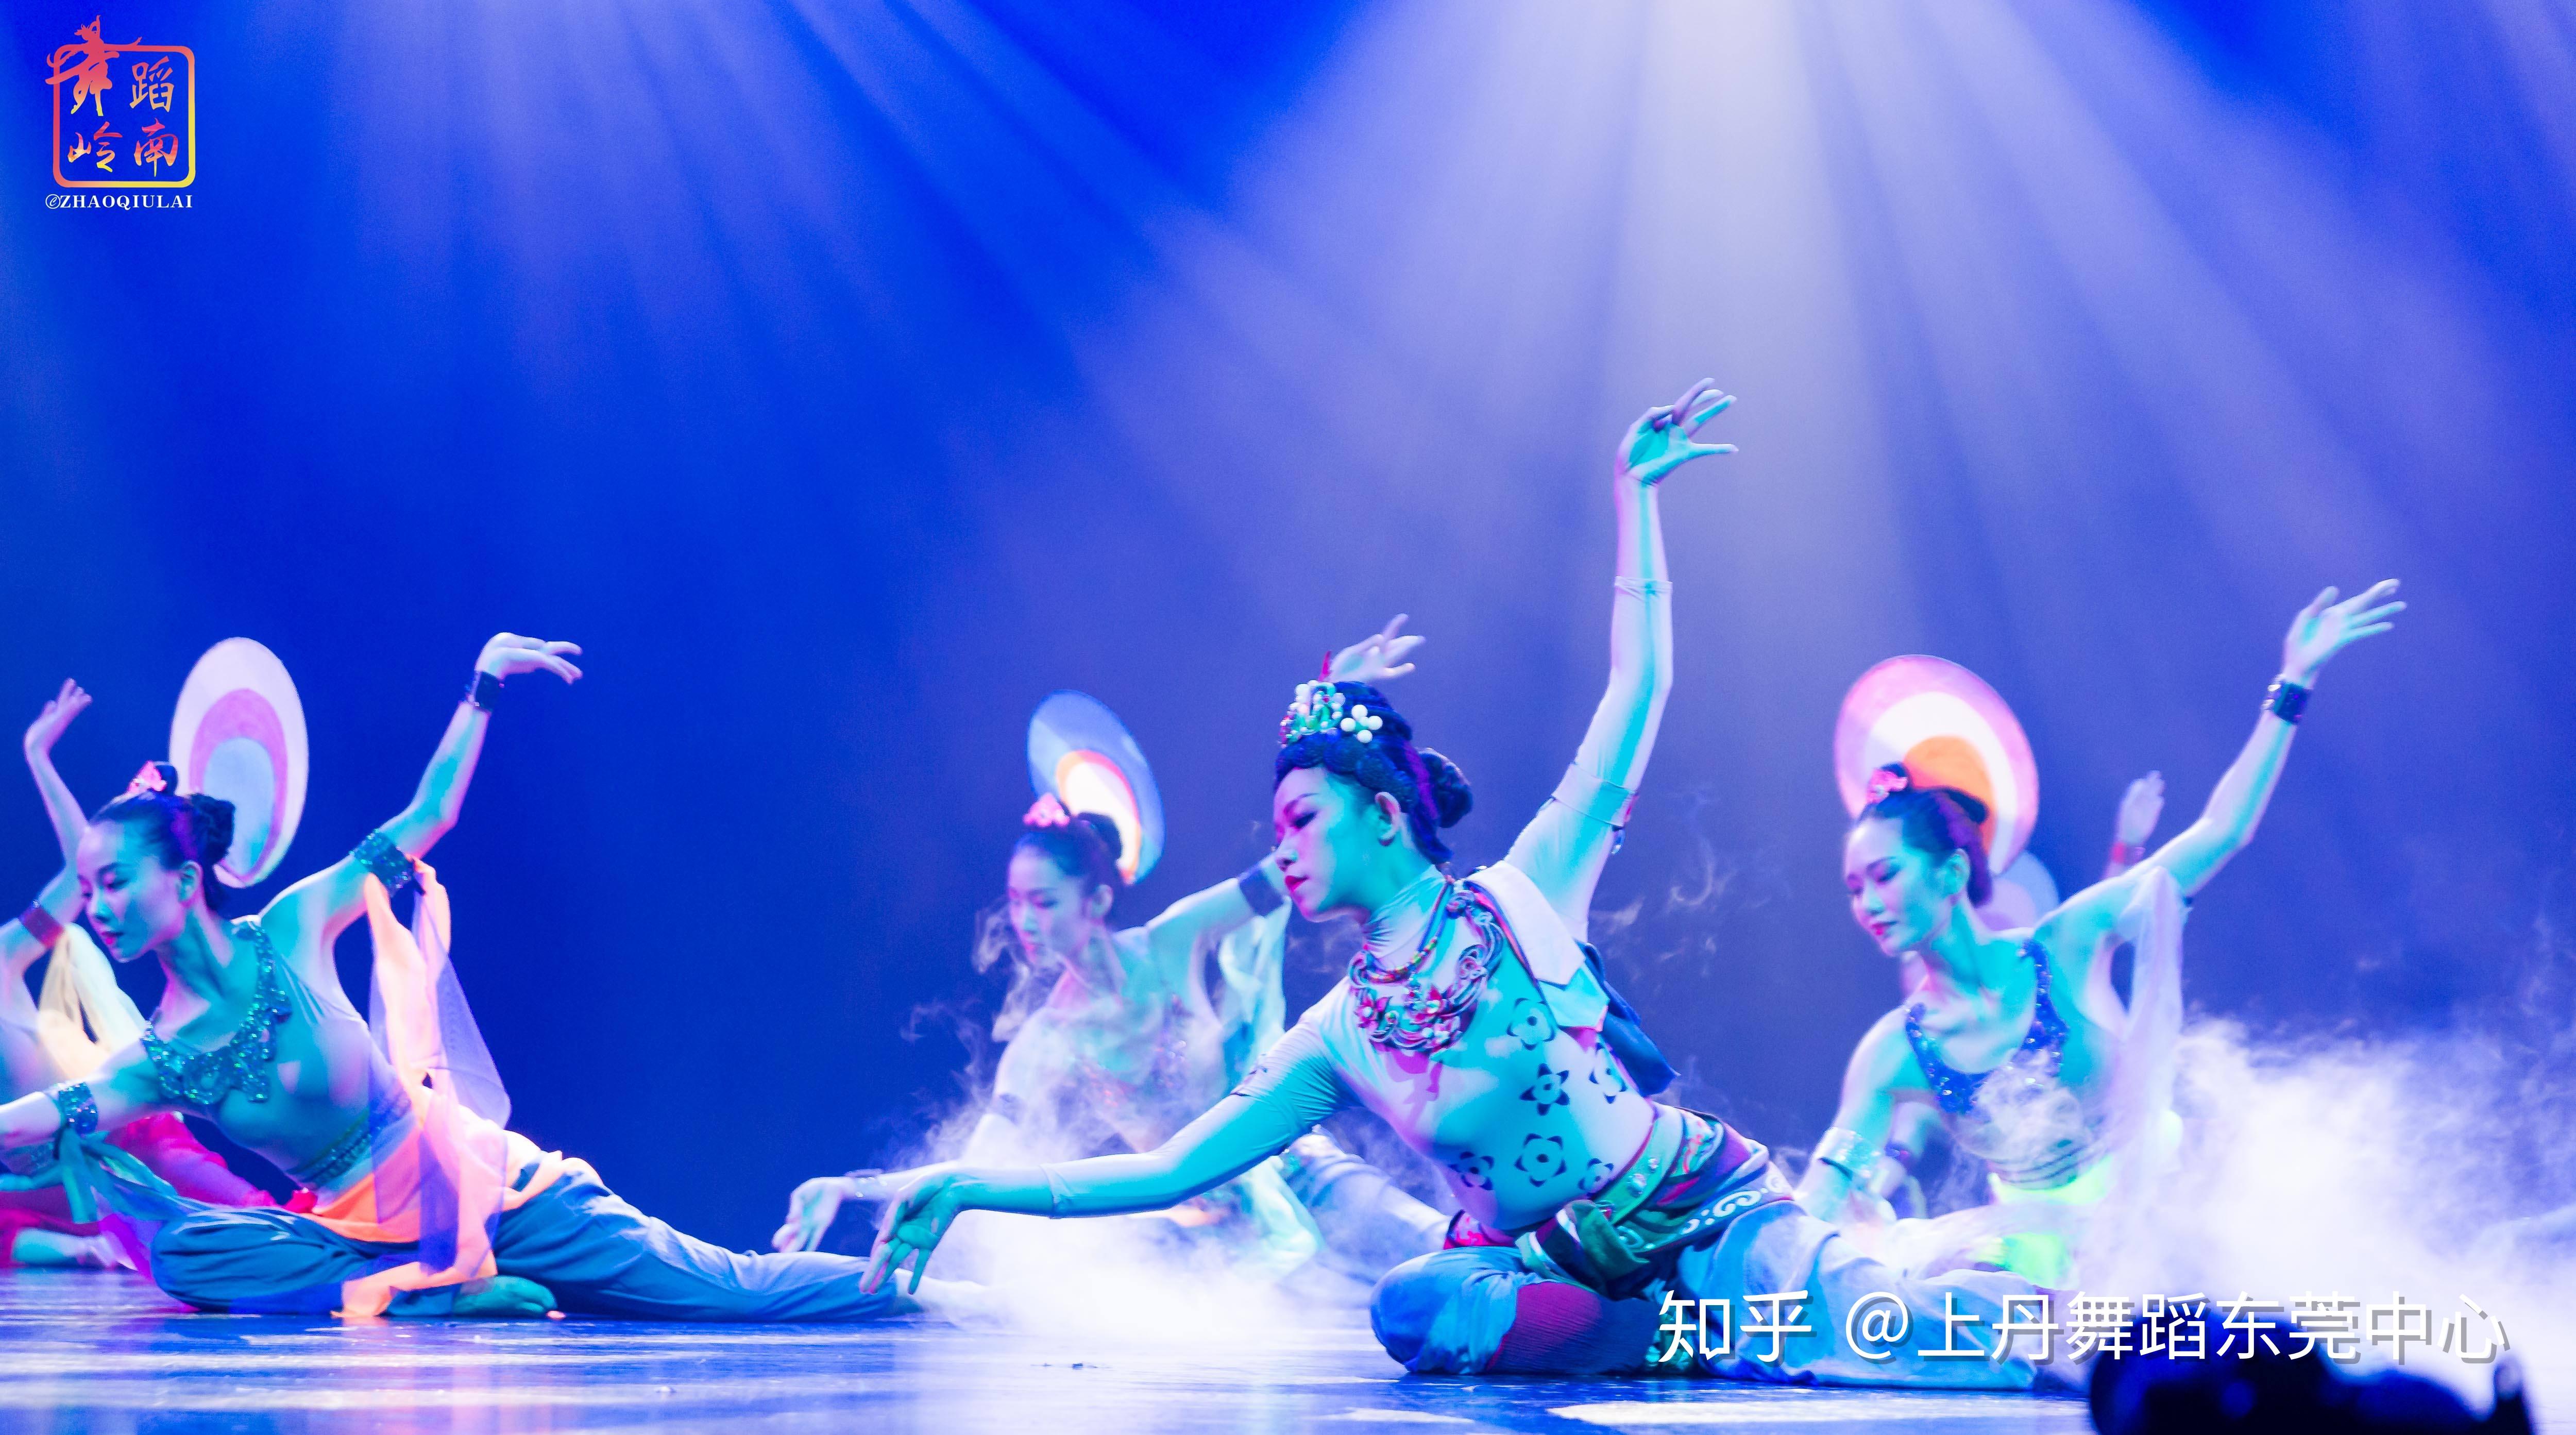 古典舞汉唐舞《甘夫人大乐舞》群舞-【单色舞蹈】(成都)中国舞9个月展示